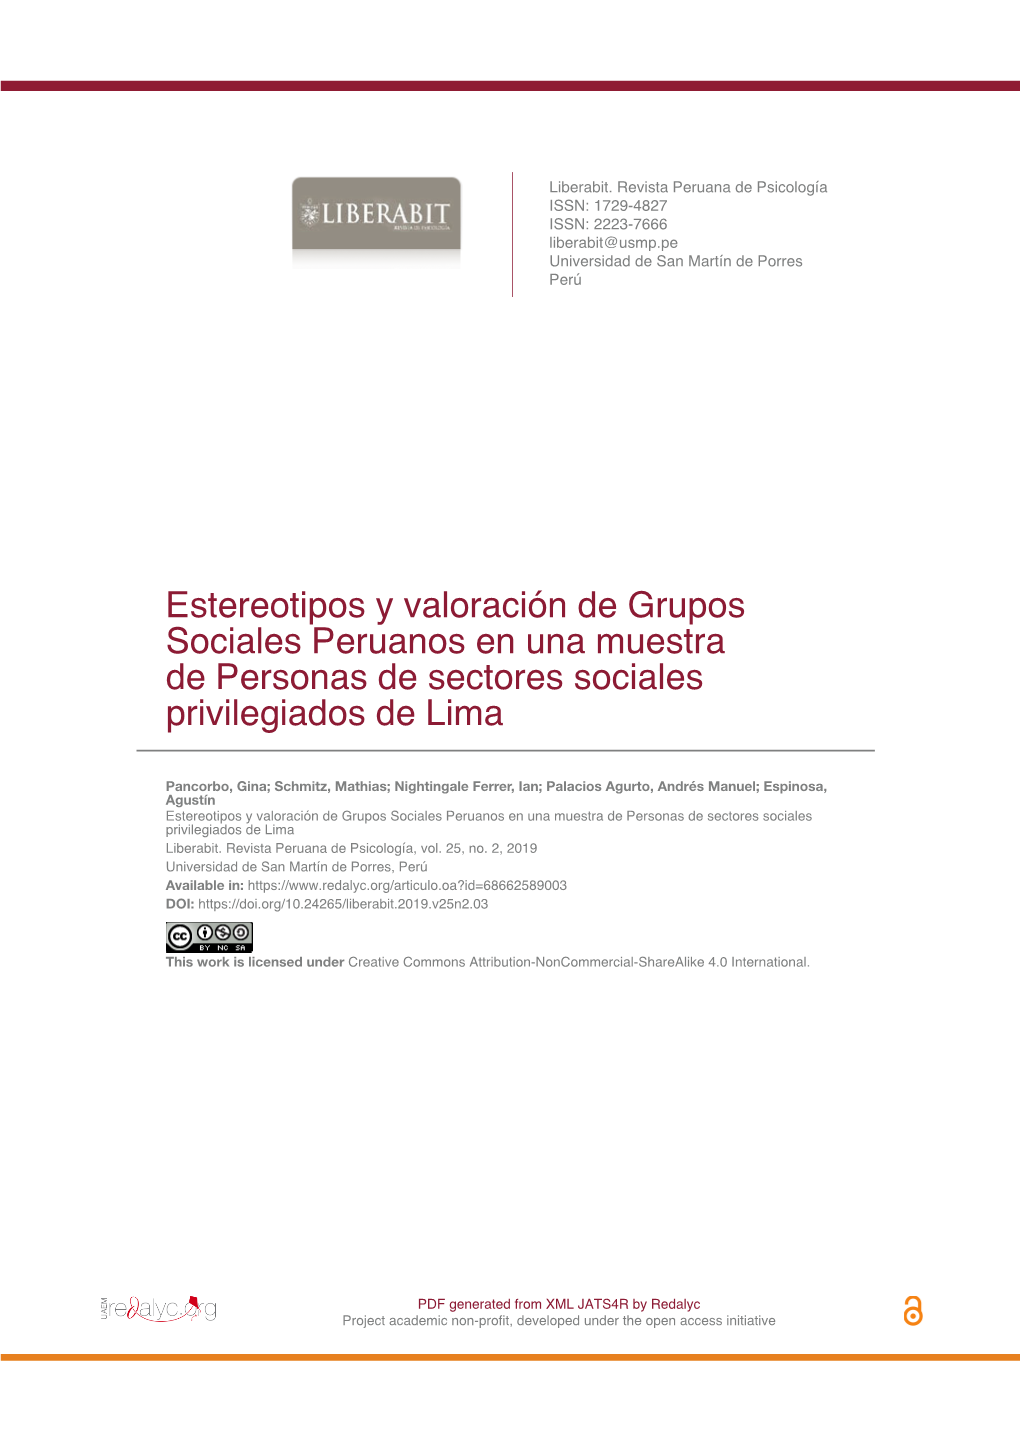 Estereotipos Y Valoración De Grupos Sociales Peruanos En Una Muestra De Personas De Sectores Sociales Privilegiados De Lima